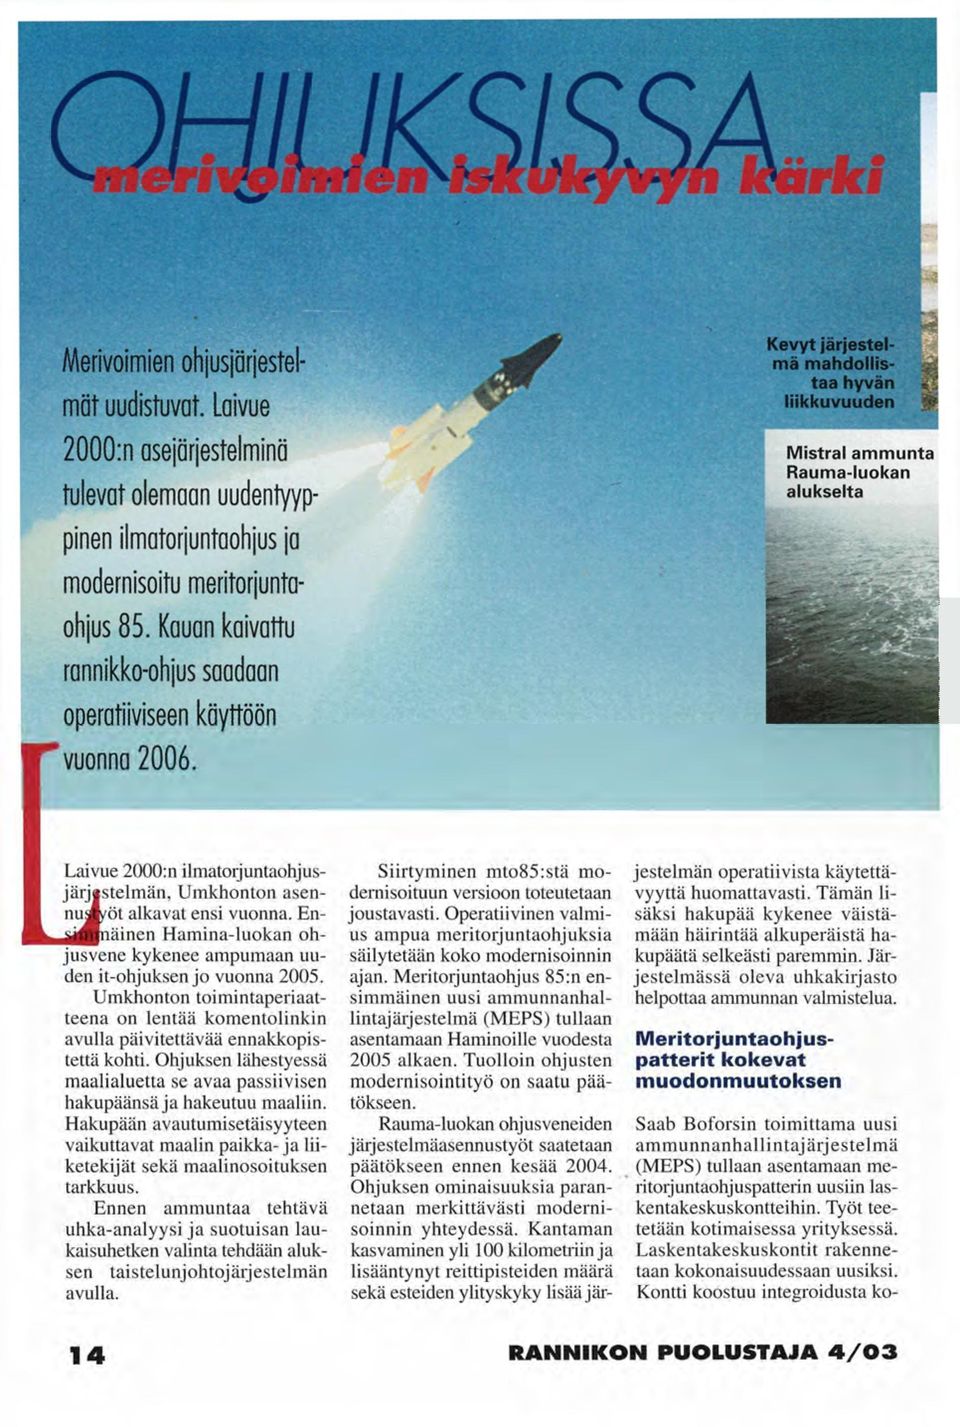 Kevyt järjestelmä mahdollistaa hyvän liikkuvuuden Ui Mistral ammunta Rauma-luokan alukselta Laivue 2000:n ilmatorjuntaohjusjärj stelmän, Umkhonton asennus /öt alkavat ensi vuonna.